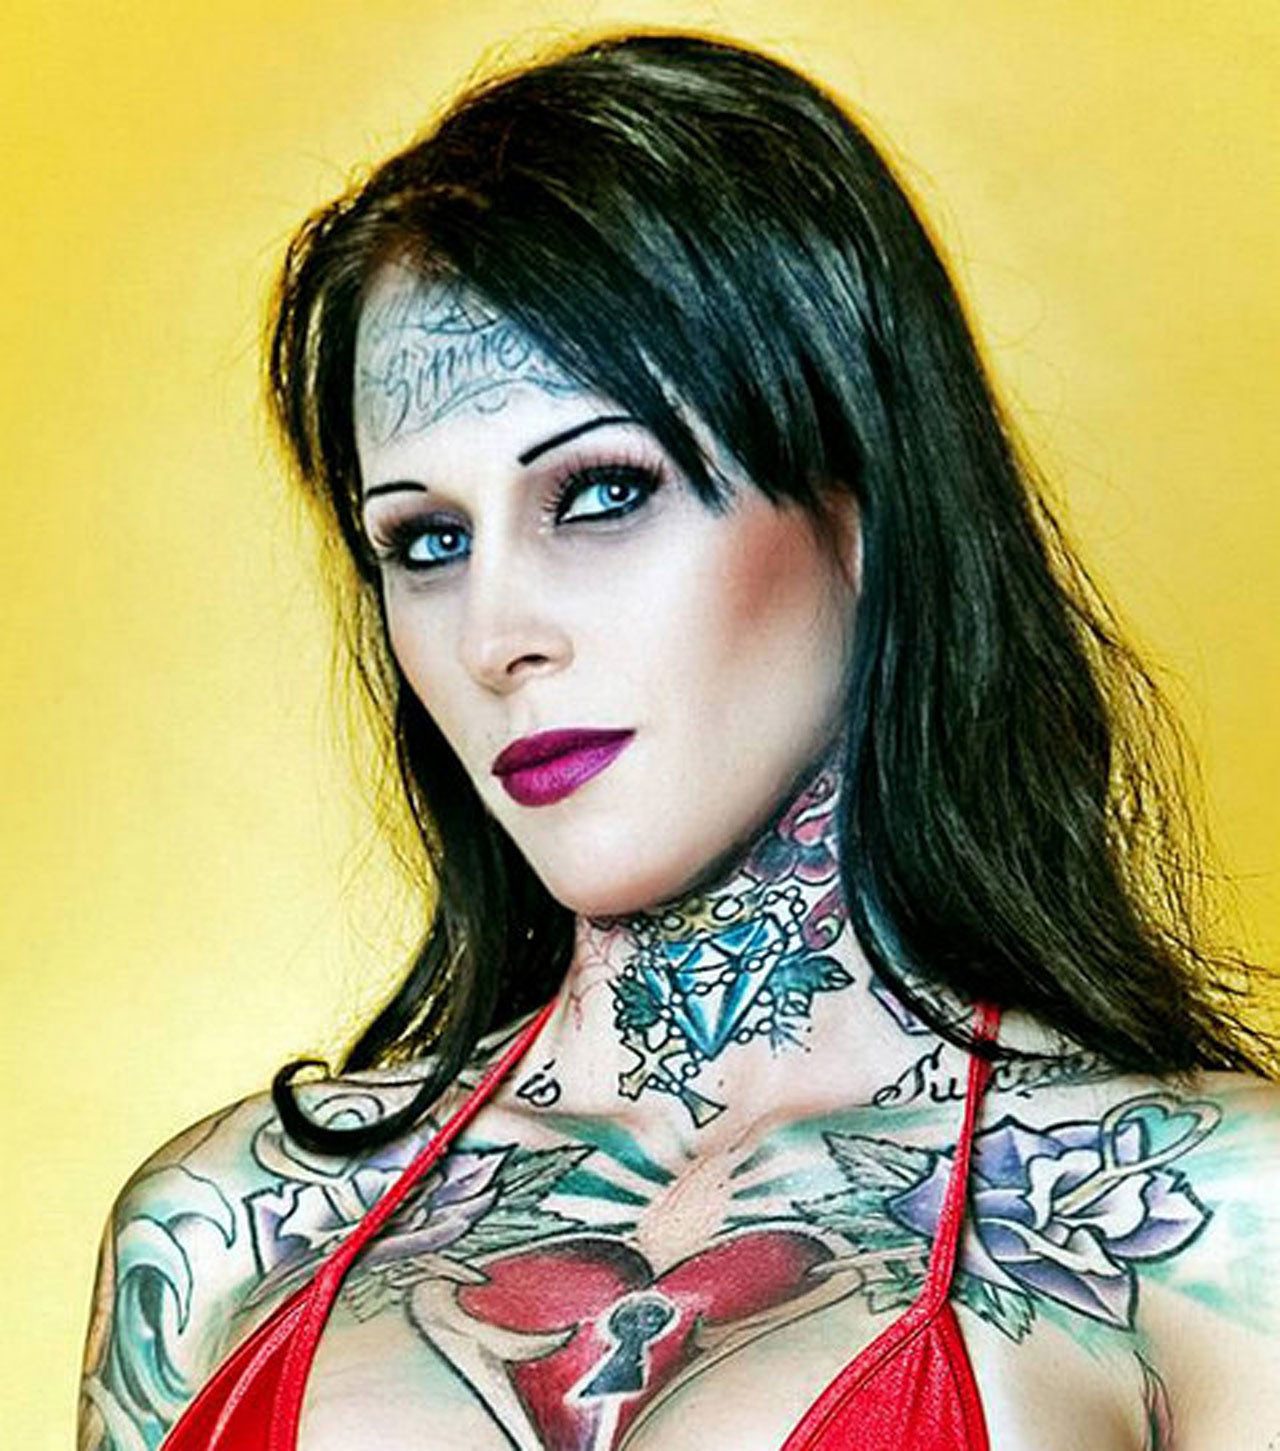 Michelle bombshell zeigt sexy nackten Körper und ihre Tattoos
 #75352456